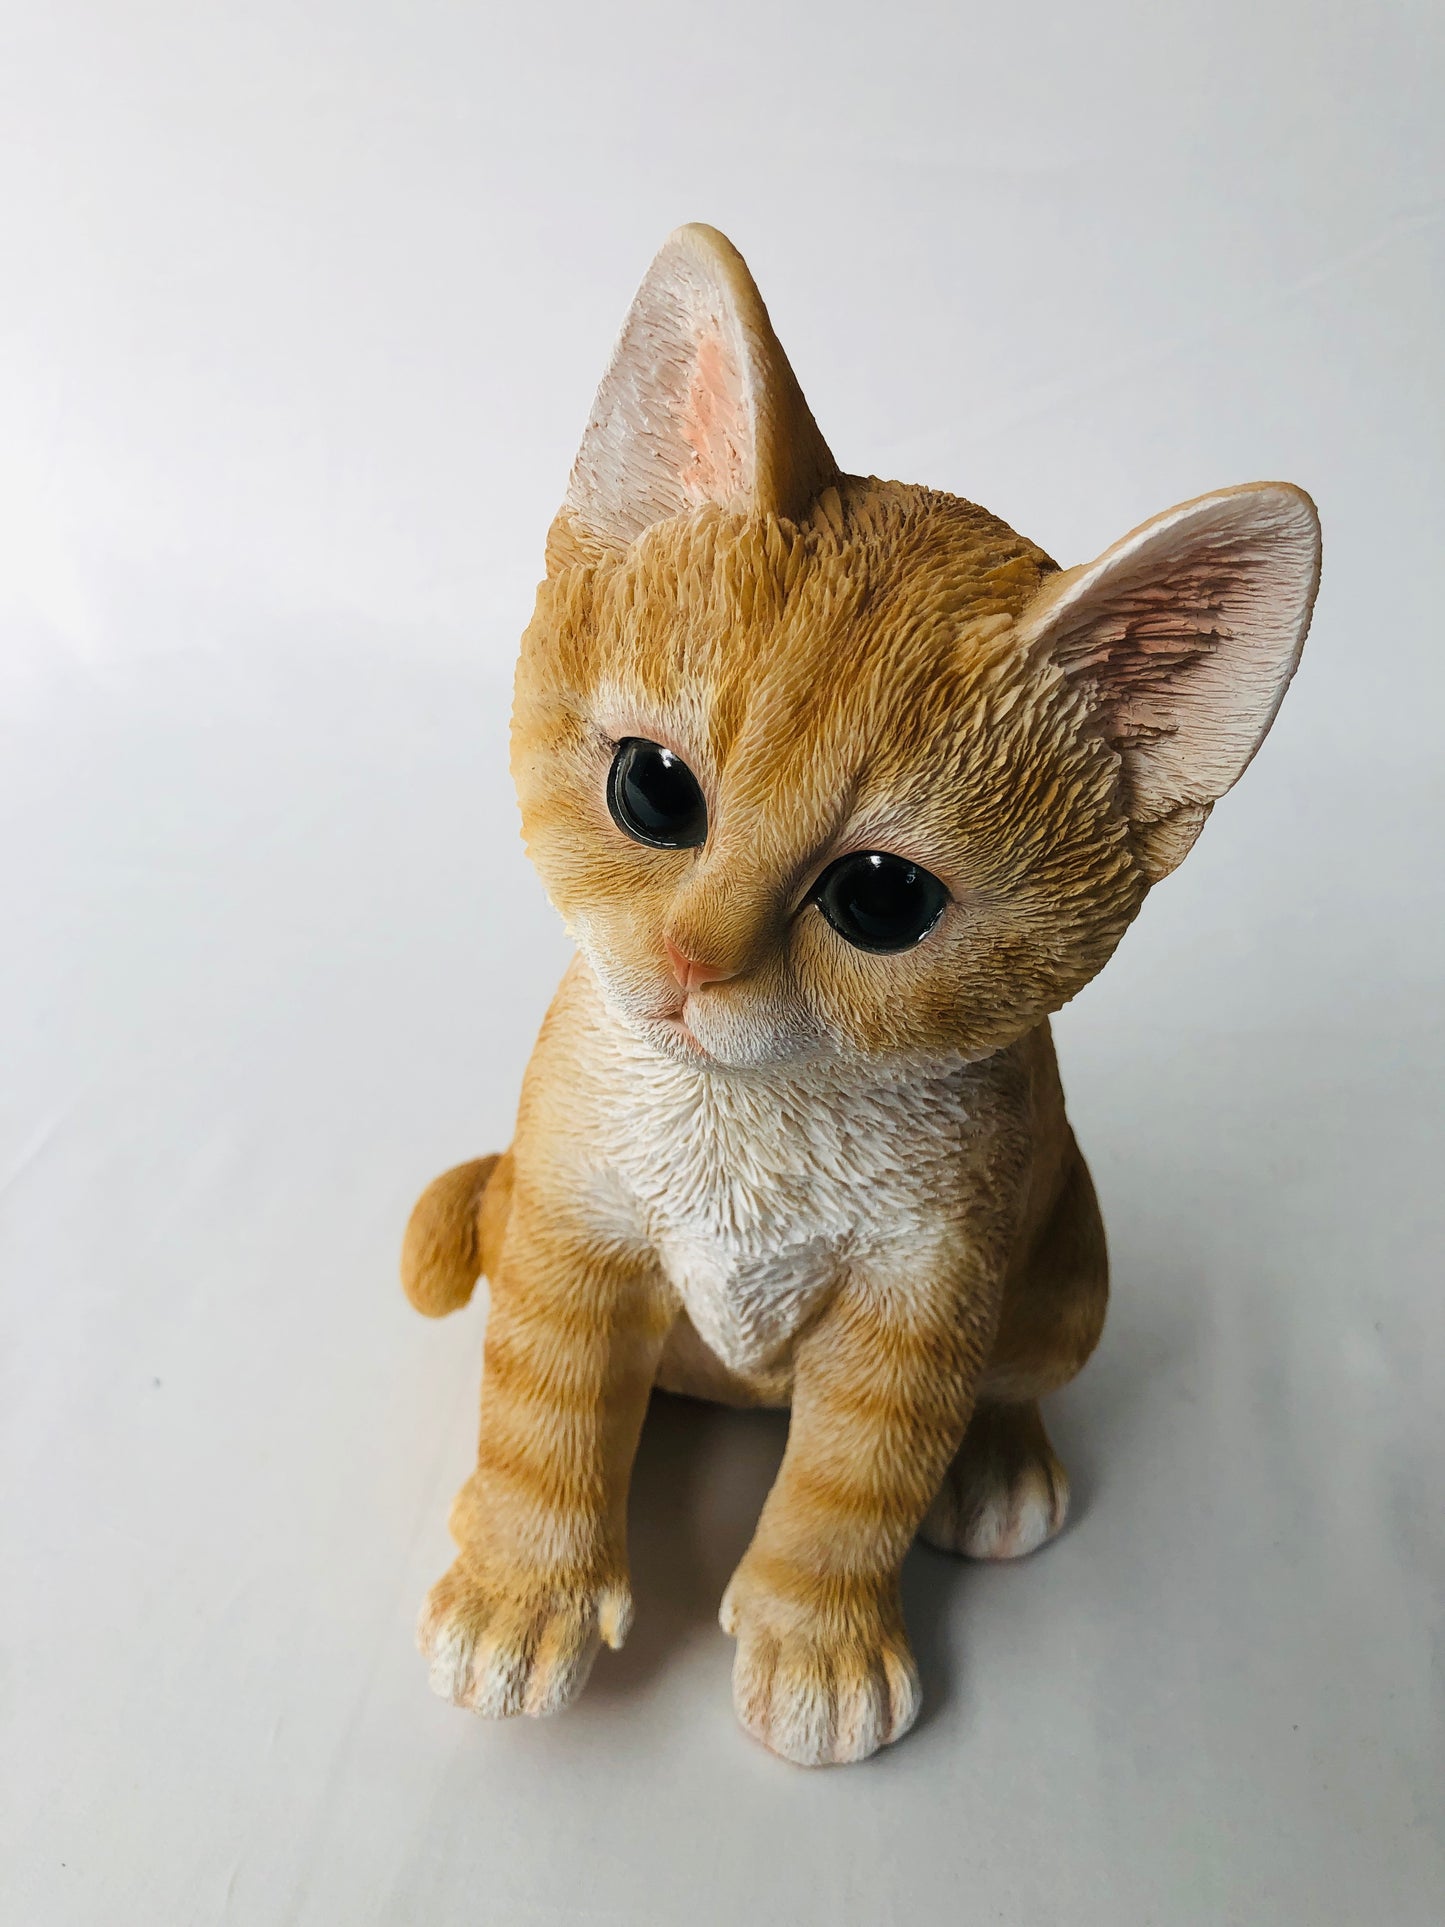 
                  
                    Ginger Kitten - Sitting (15744)
                  
                